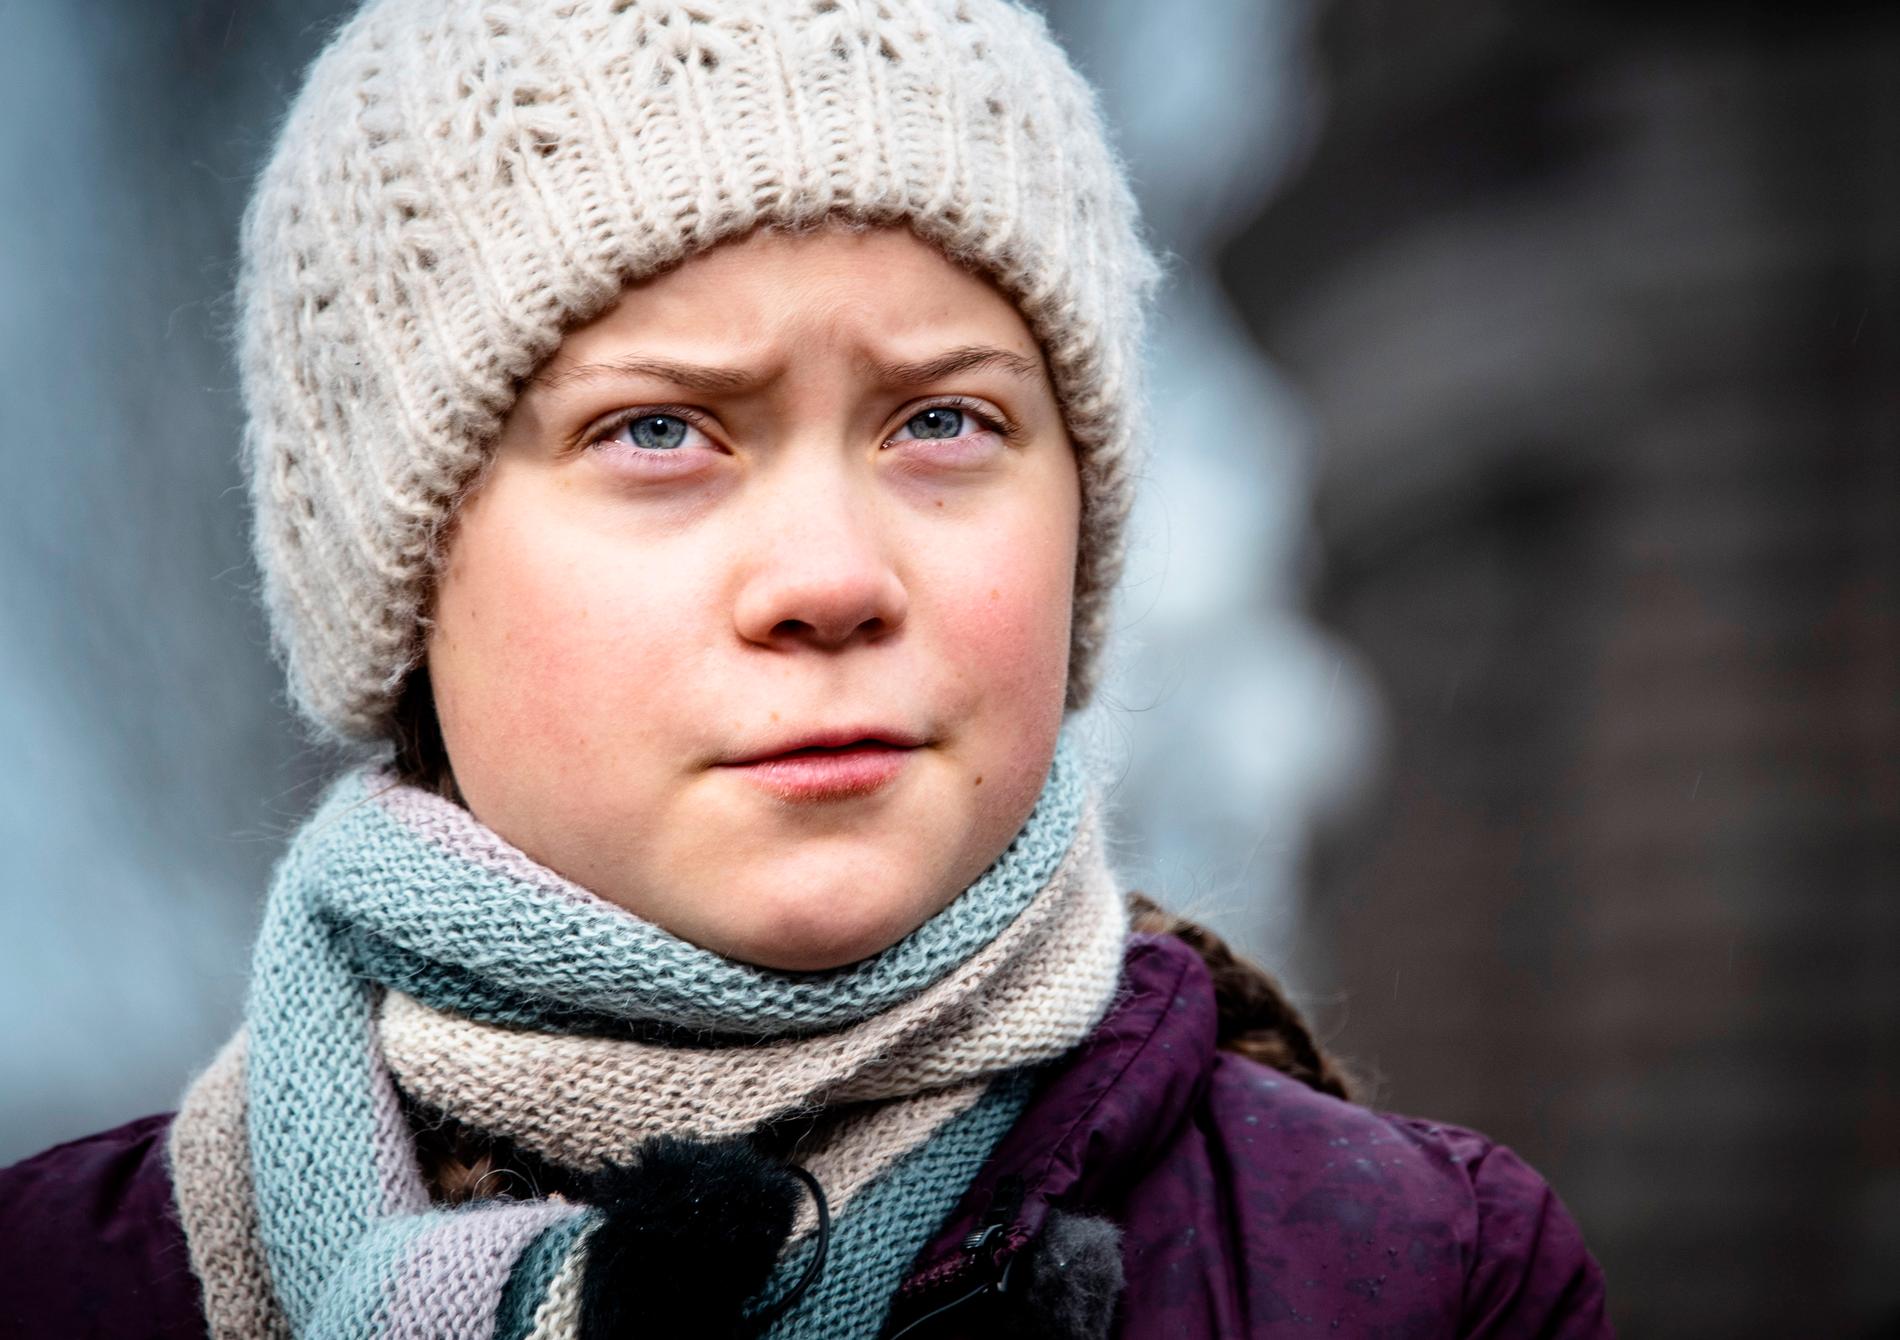 Hundratusentals skolungdomar över hela världen strejkade på fredagen för klimatet. Även i Stockholm där initiativtagaren Greta Thunberg deltog.